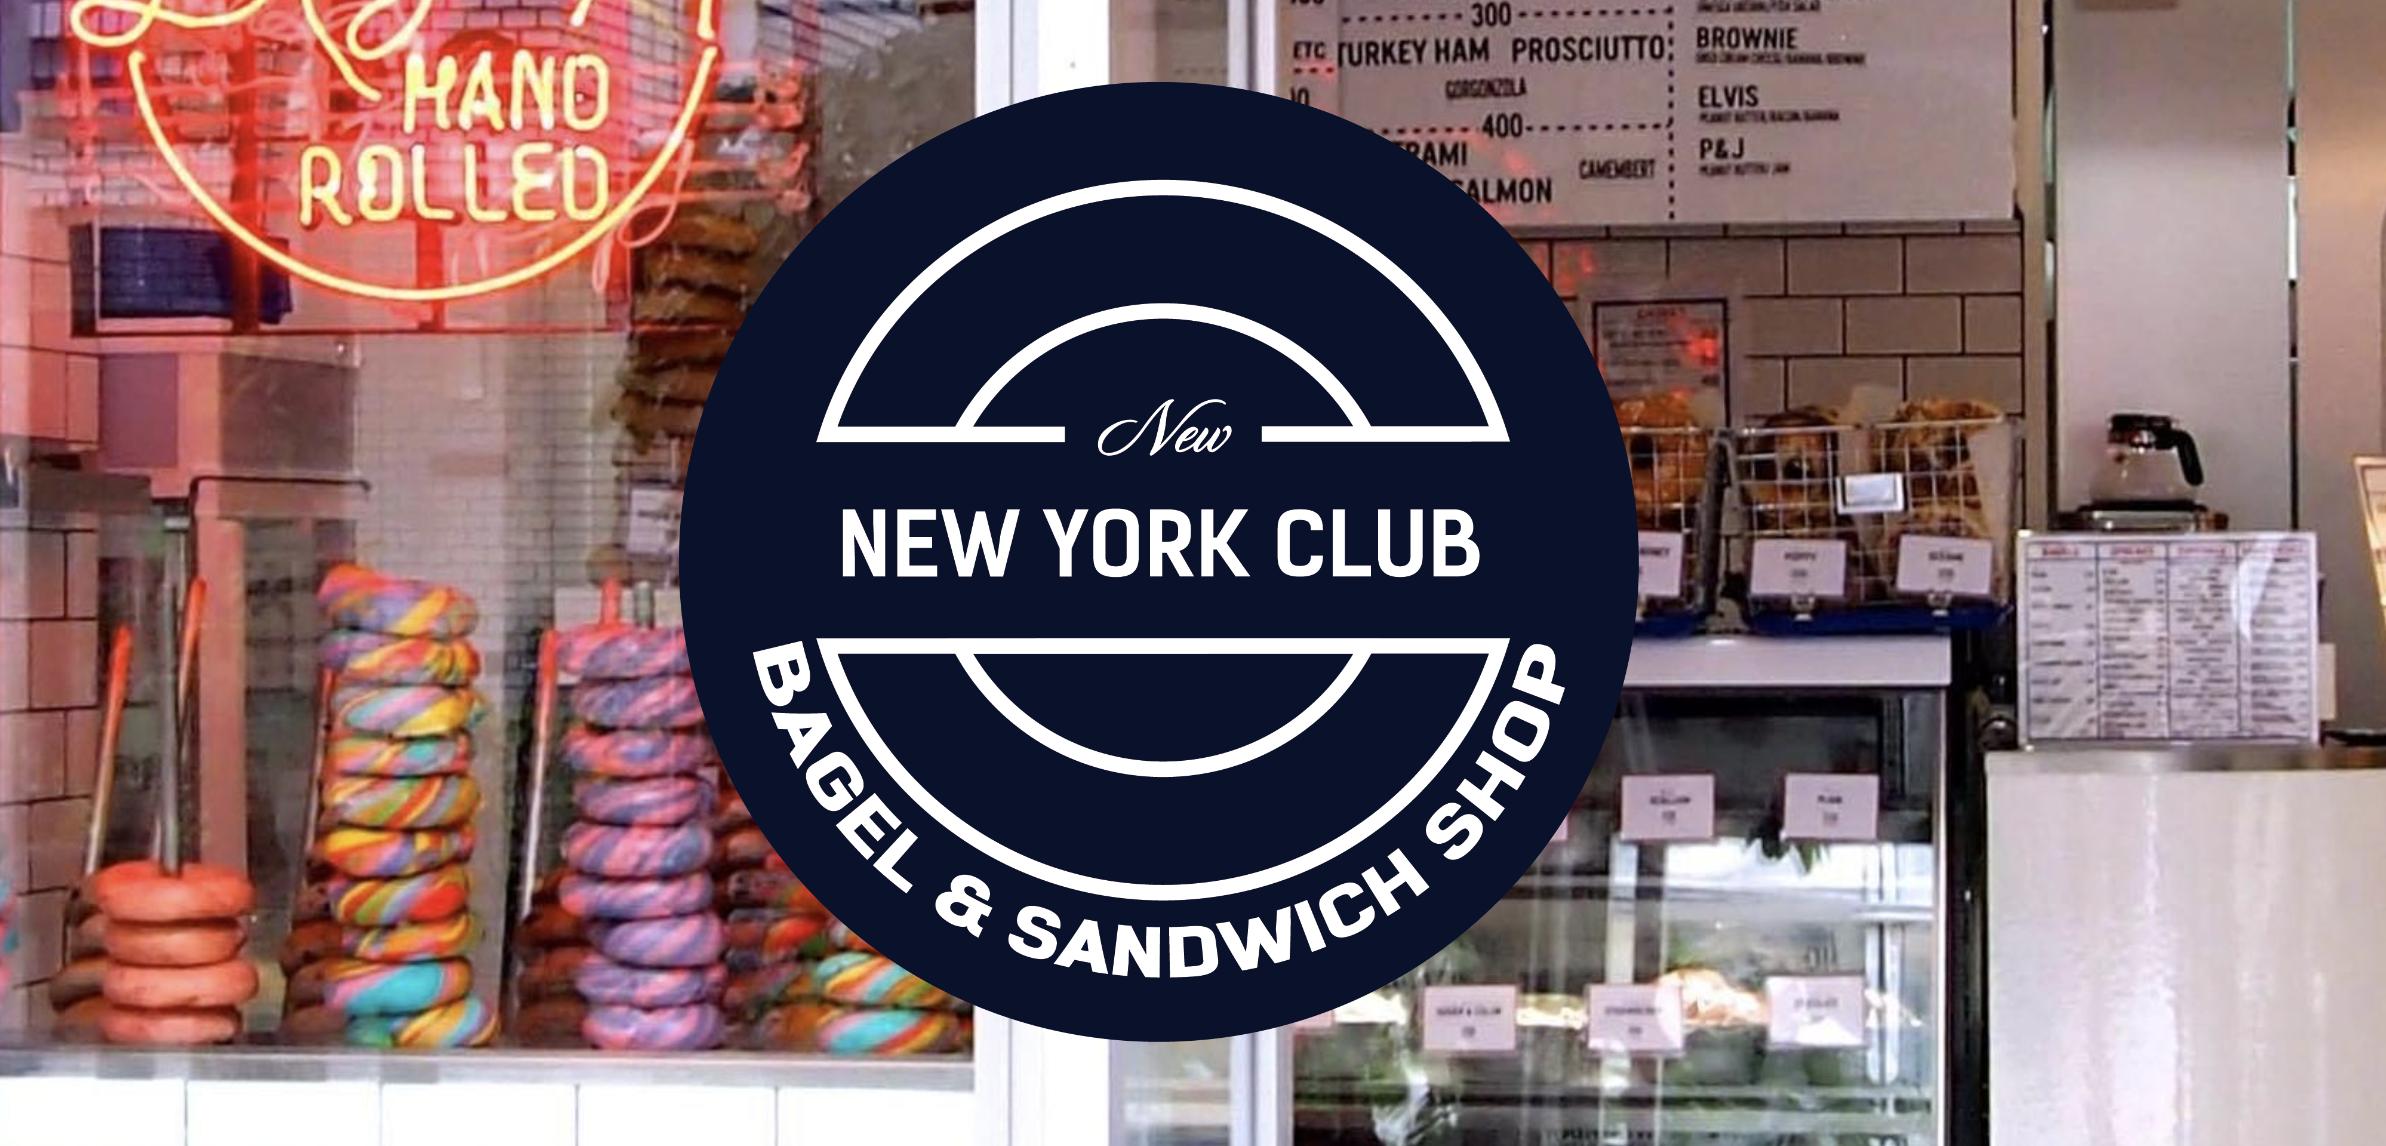 NEW NEW YORK CLUB BAGEL & SANDWICH SHOP